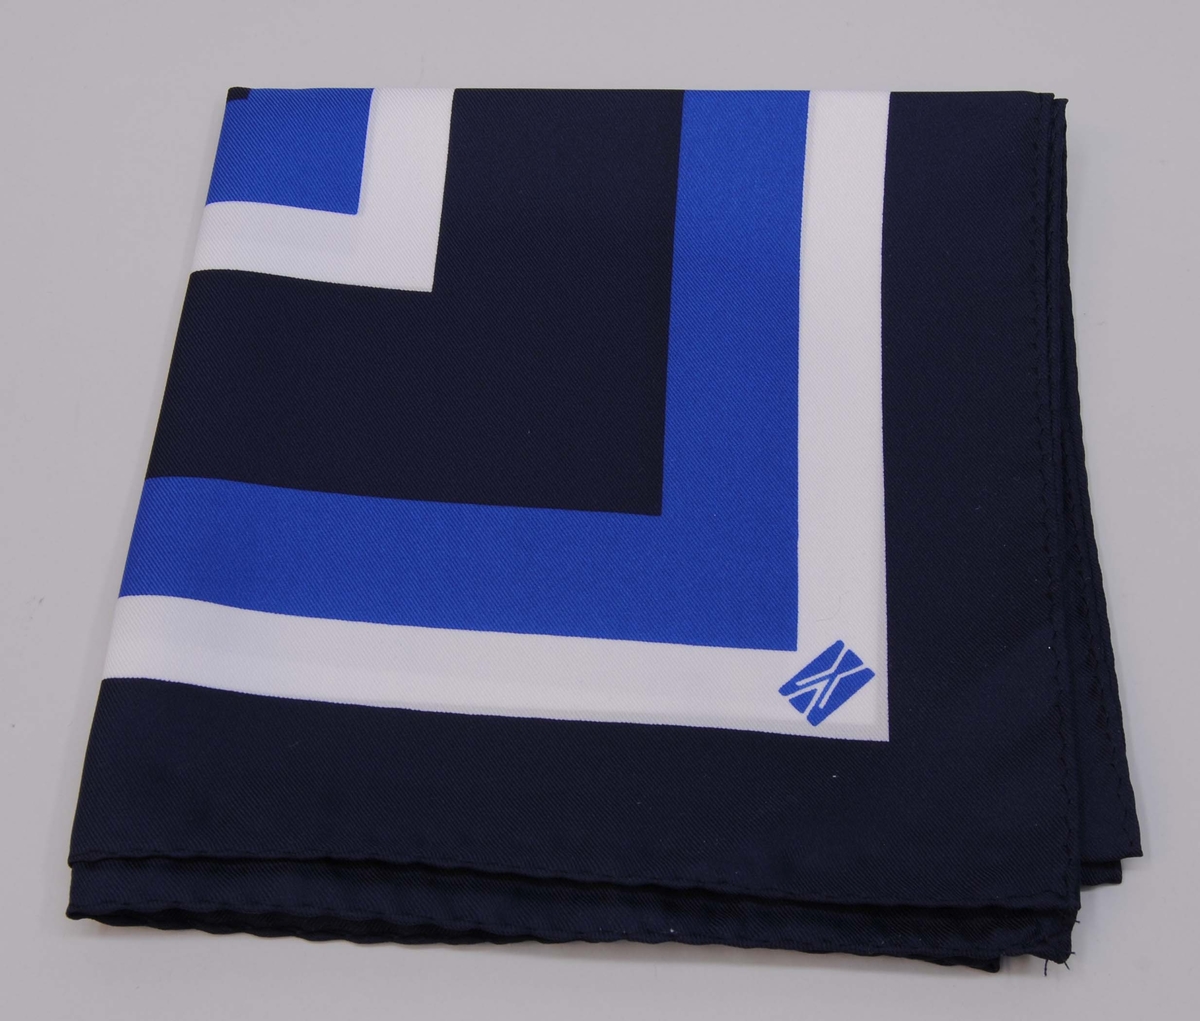 Scarf (:1) av polyester i mörkblått, blått och vitt med Banverkets logotyp. Förvaringsetui av vit kartong (:2).